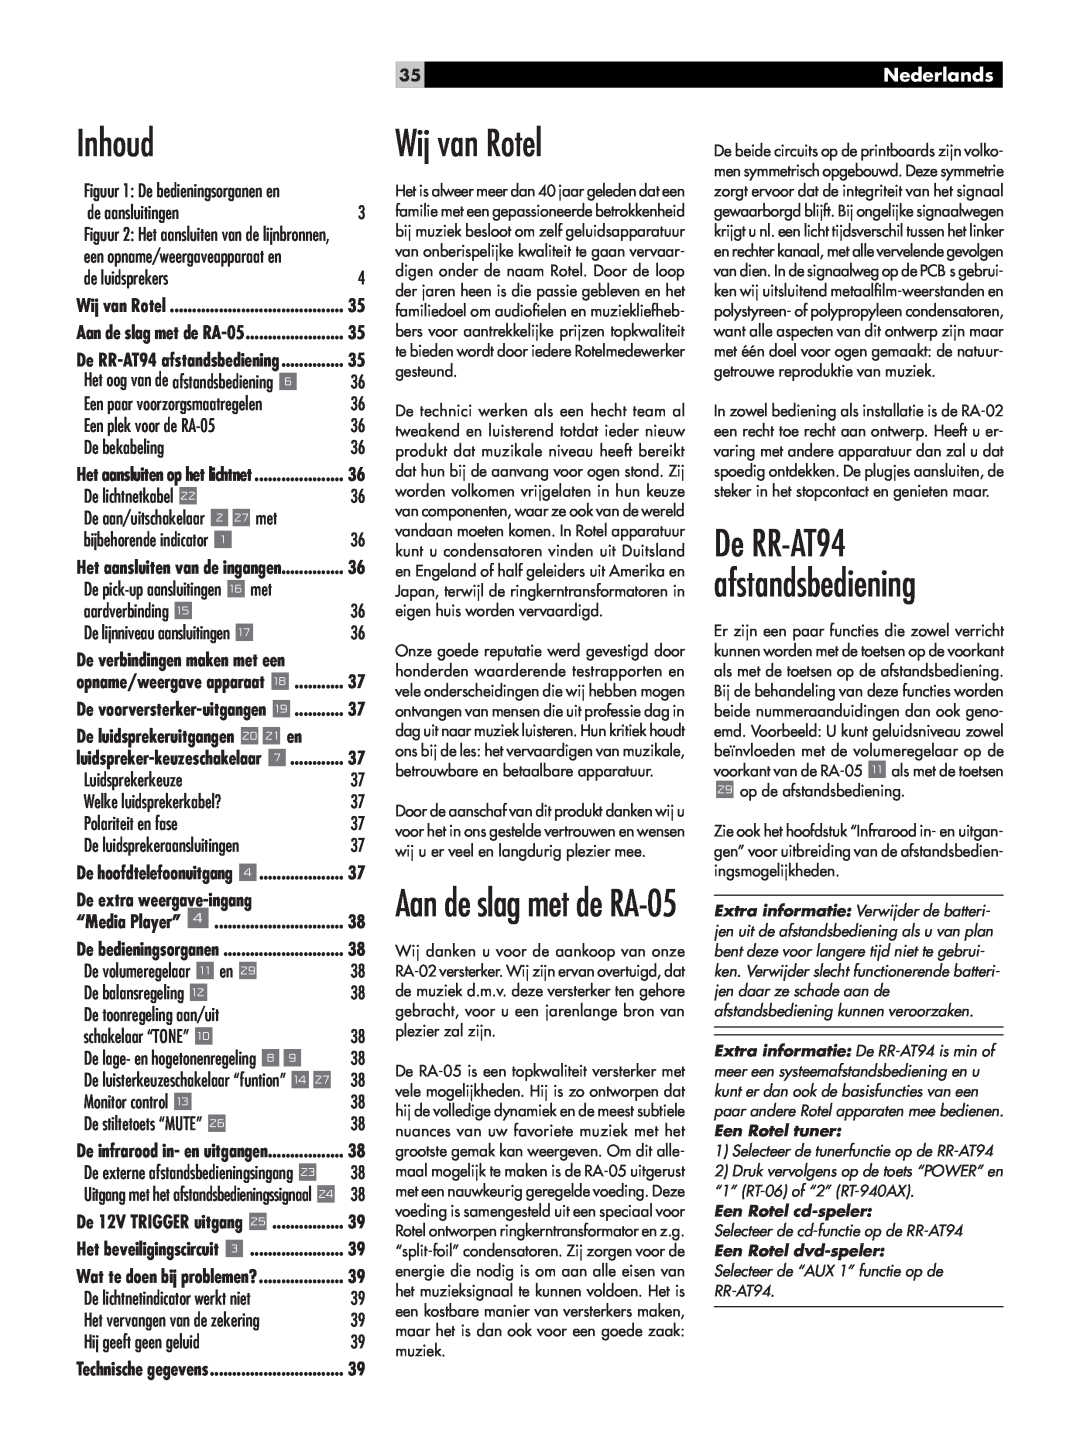 Rotel owner manual Inhoud, Wij van Rotel, De RR-AT94afstandsbediening, Aan de slag met de RA-05, Nederlands 